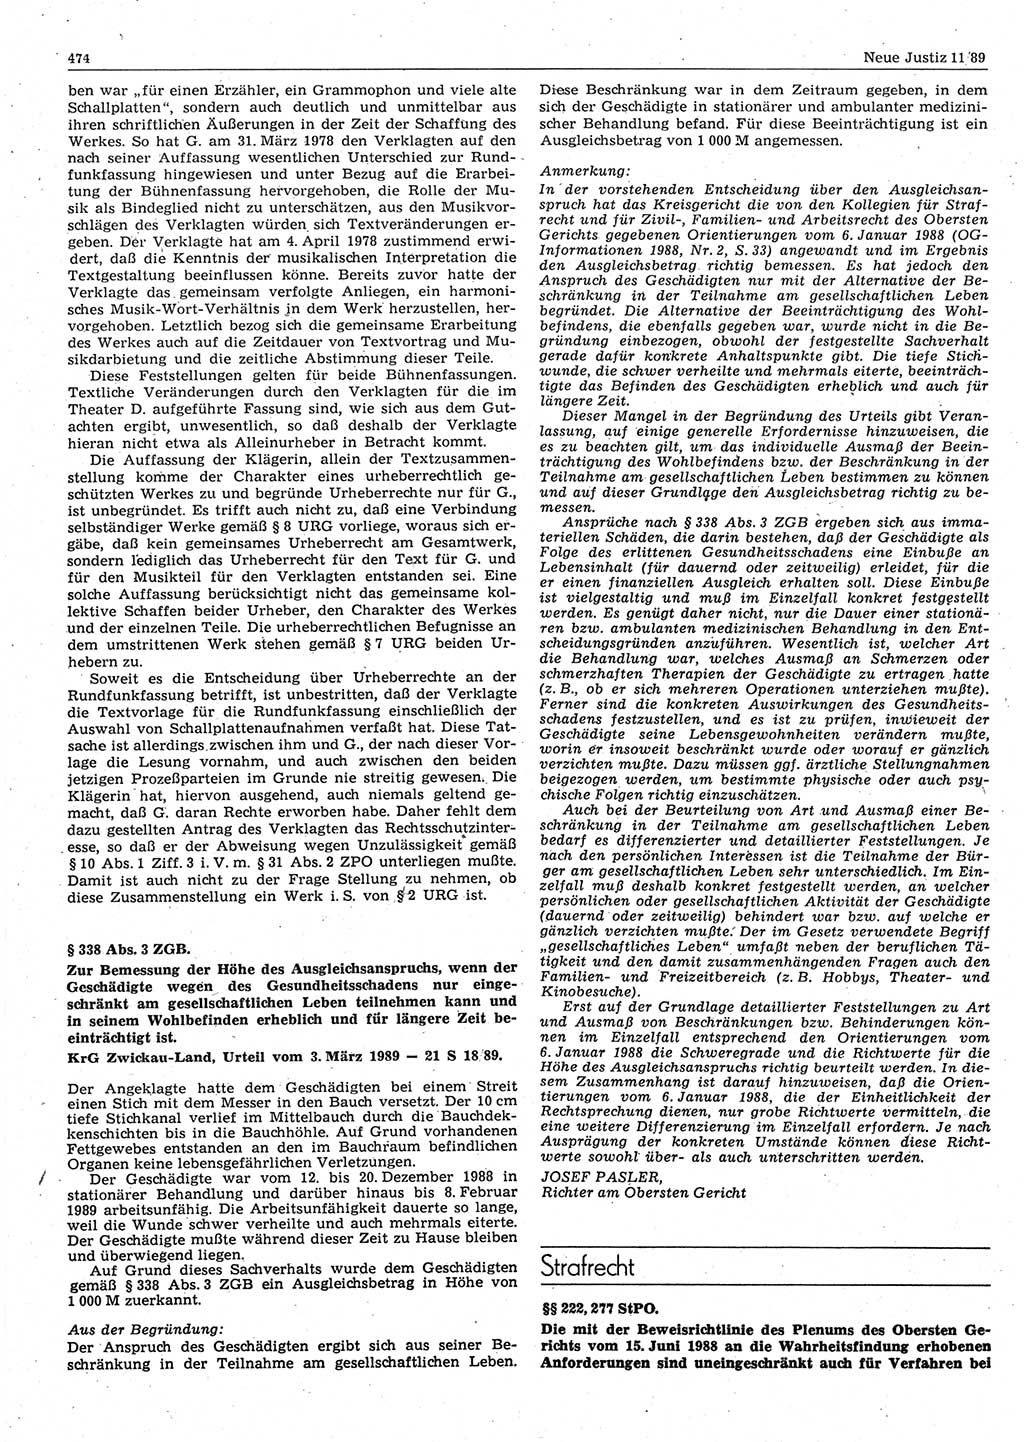 Neue Justiz (NJ), Zeitschrift für sozialistisches Recht und Gesetzlichkeit [Deutsche Demokratische Republik (DDR)], 43. Jahrgang 1989, Seite 474 (NJ DDR 1989, S. 474)